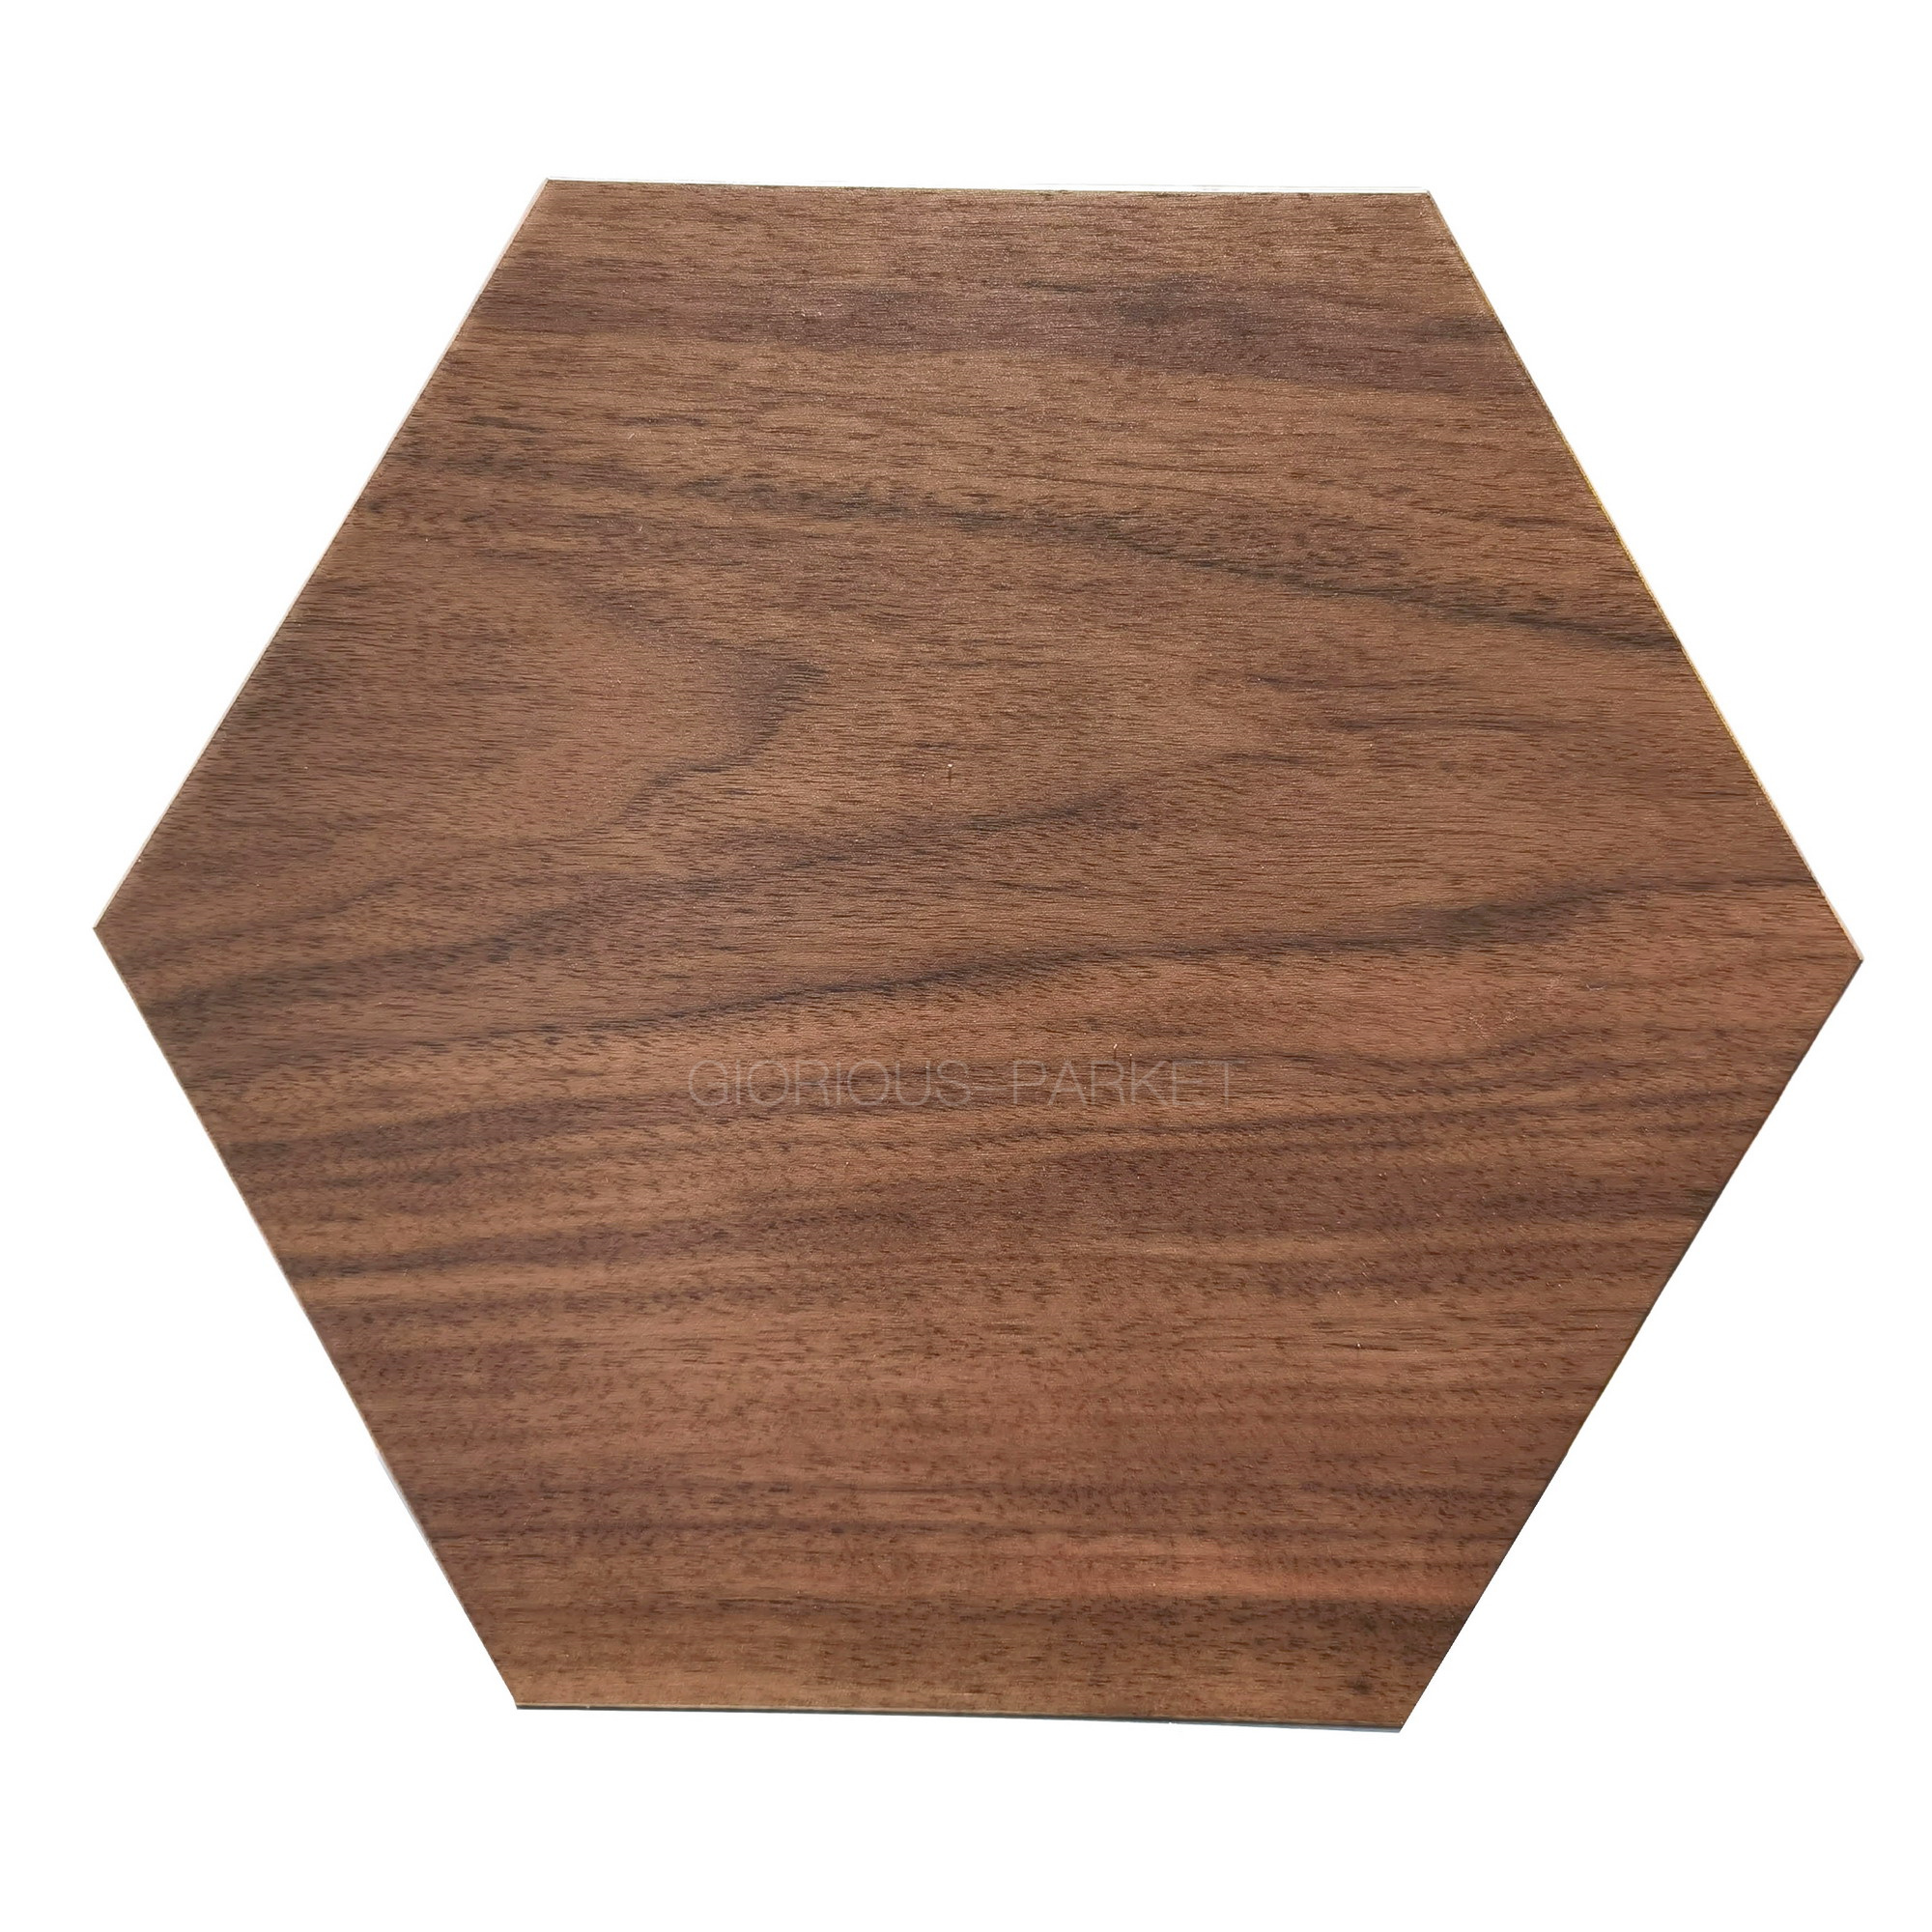 American Walnut Hexagon desle na zamówienie równoległe Dekoracja domu DECED Naturalne drewno podłogi drewniane tapeta deco luksusowe panele ścienne ręcznie robione carftsman